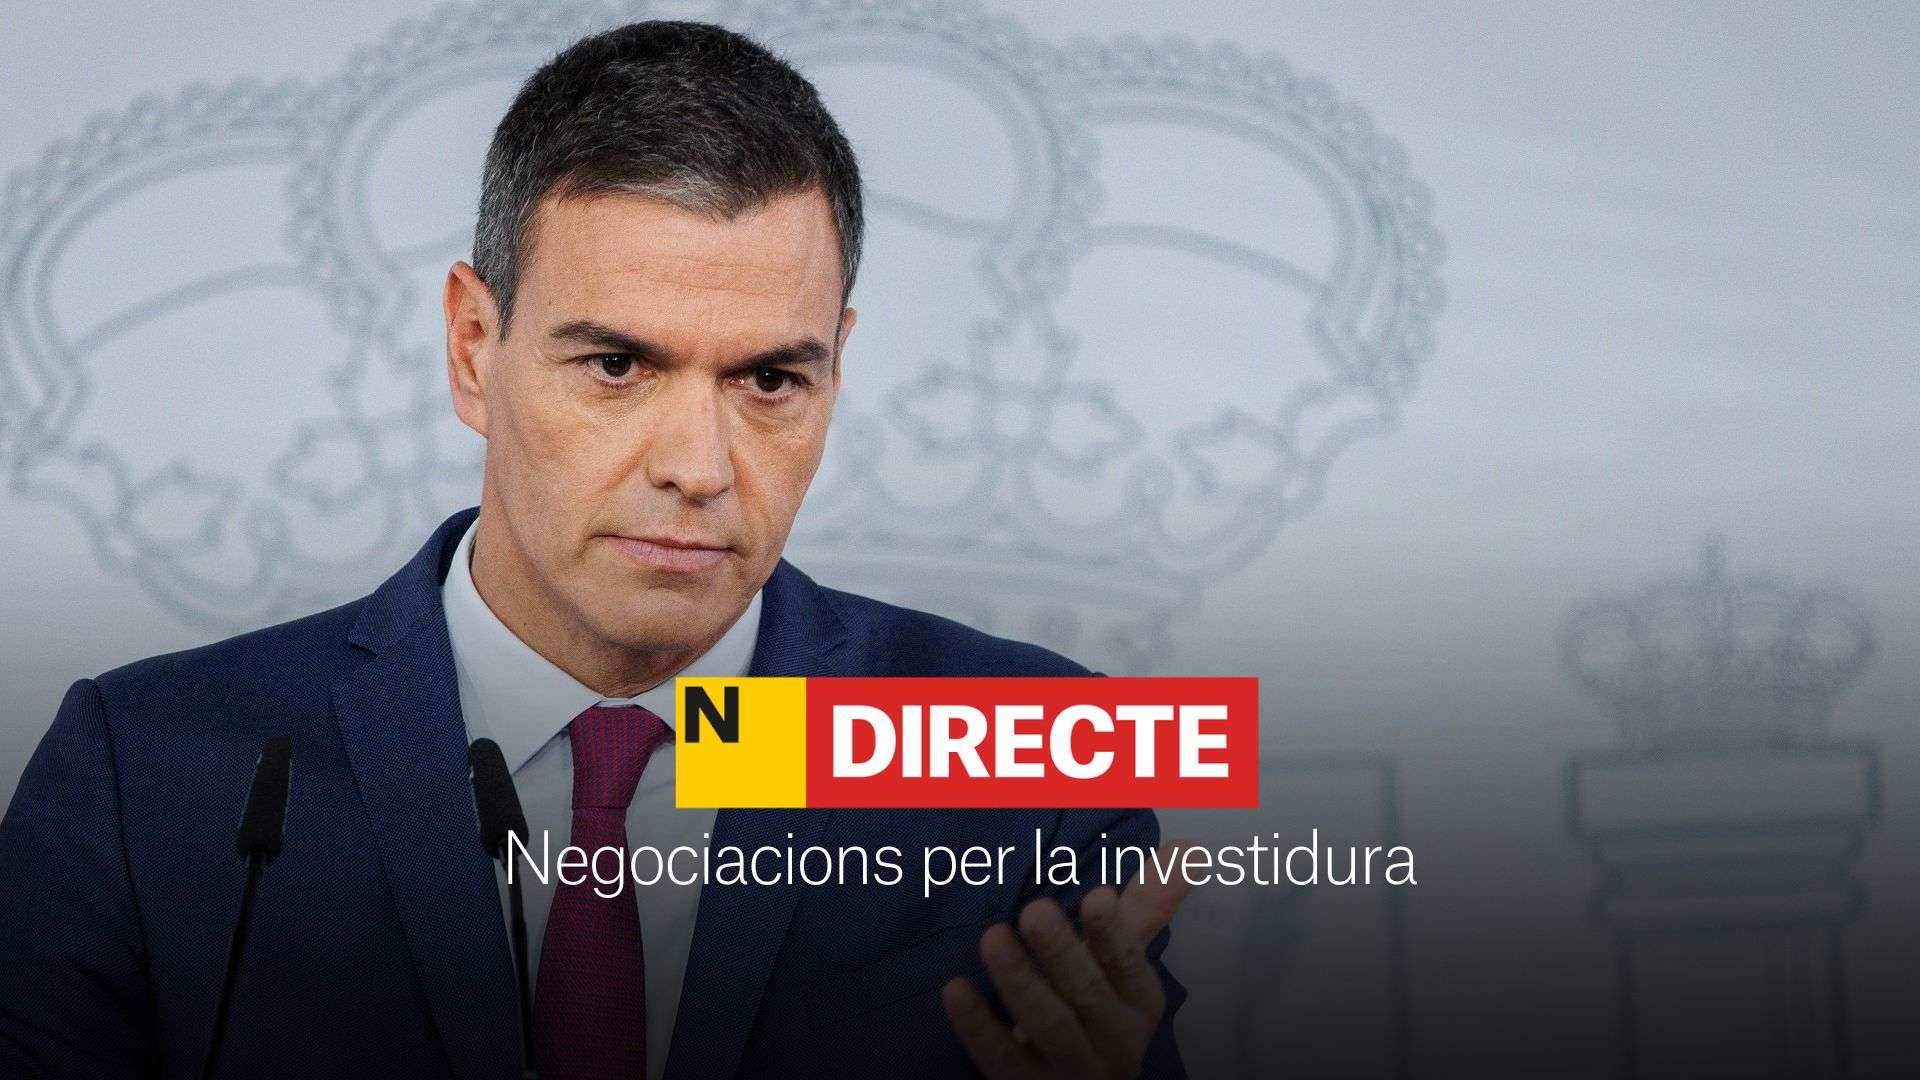 Negociacions per a la investidura de Pedro Sánchez, DIRECTE | Últimes notícies del 7 de novembre